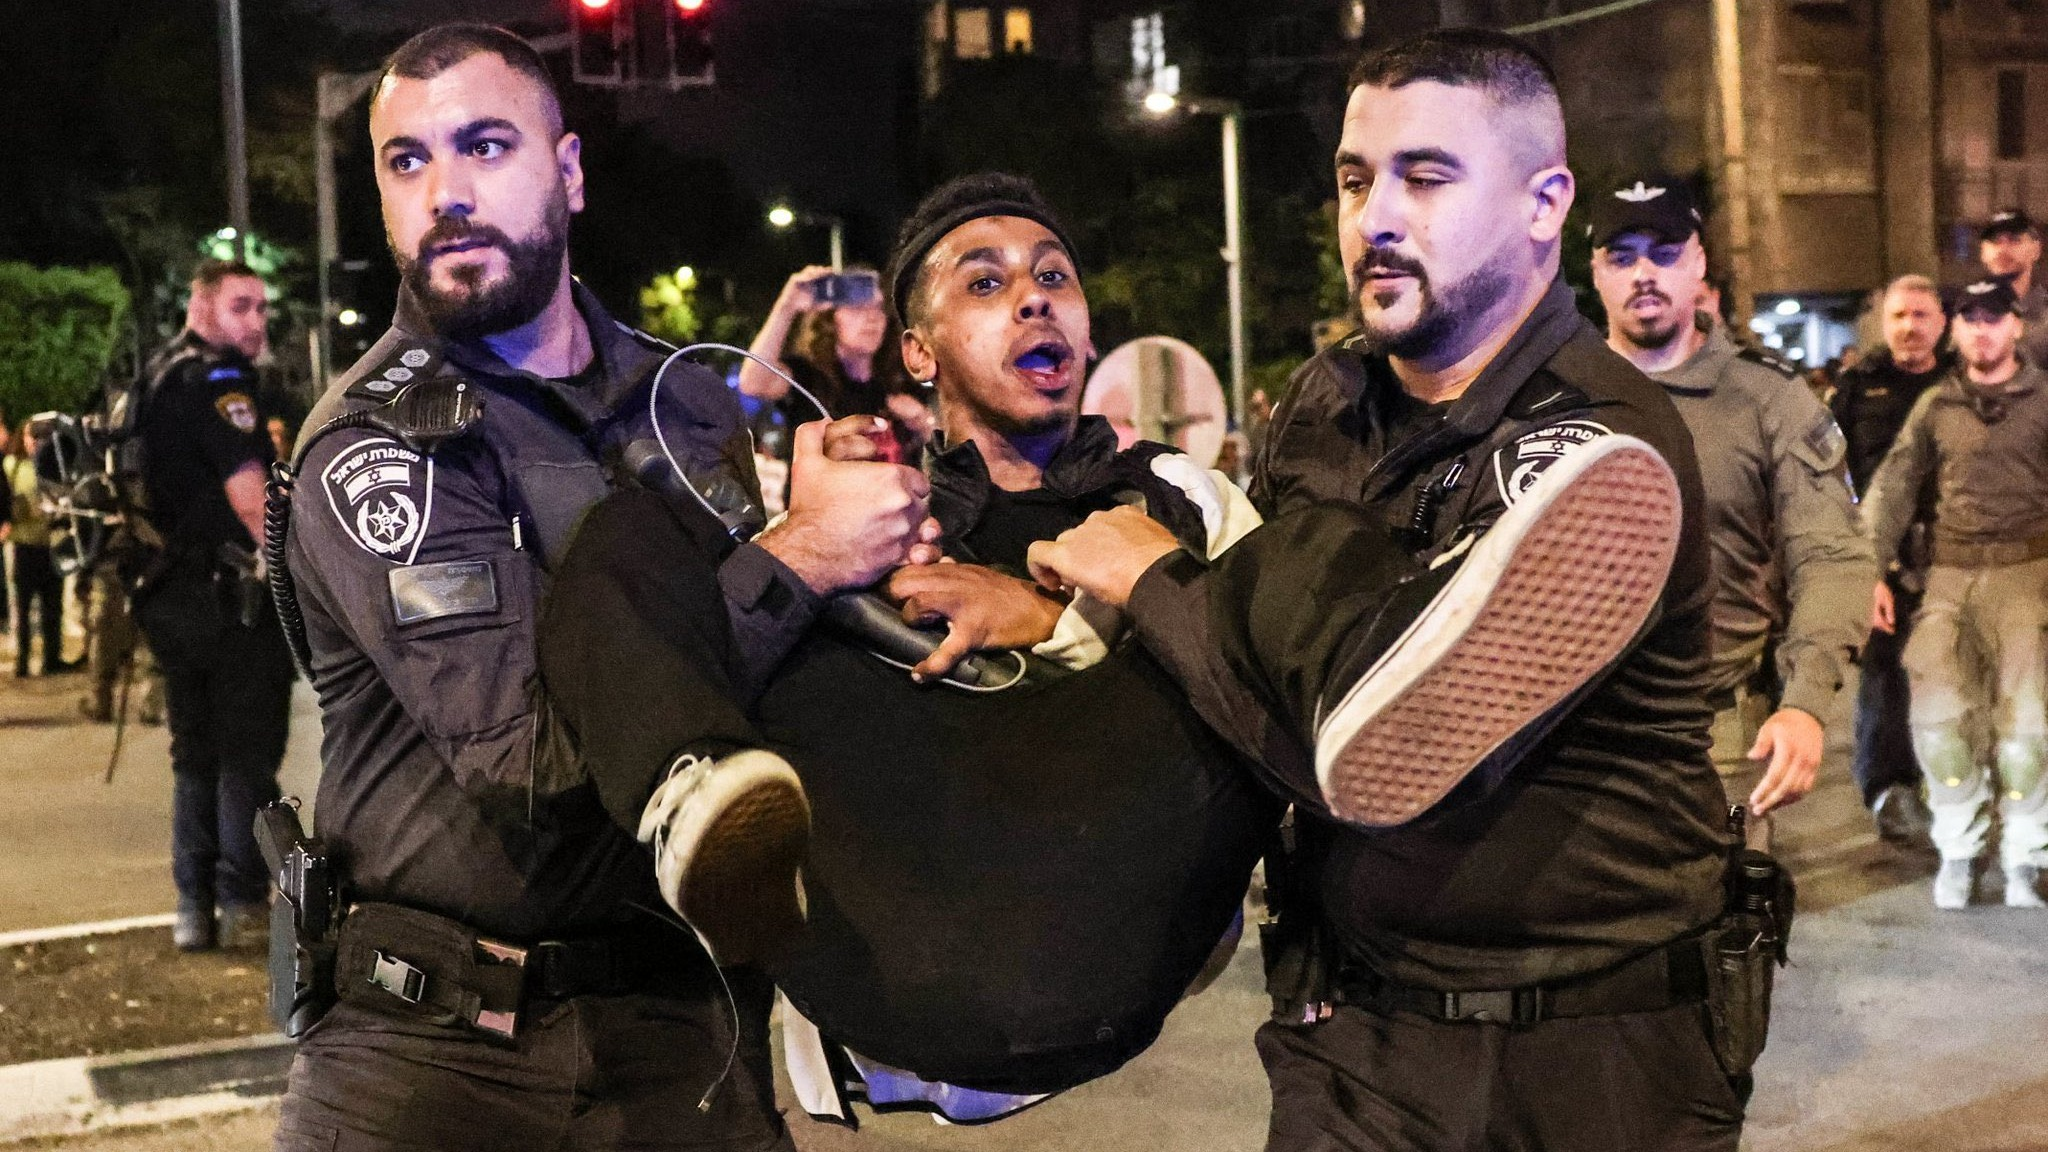 Streamer tai tiếng Johnny Somali kích động sĩ quan cảnh sát Israel và bị bắt giữ